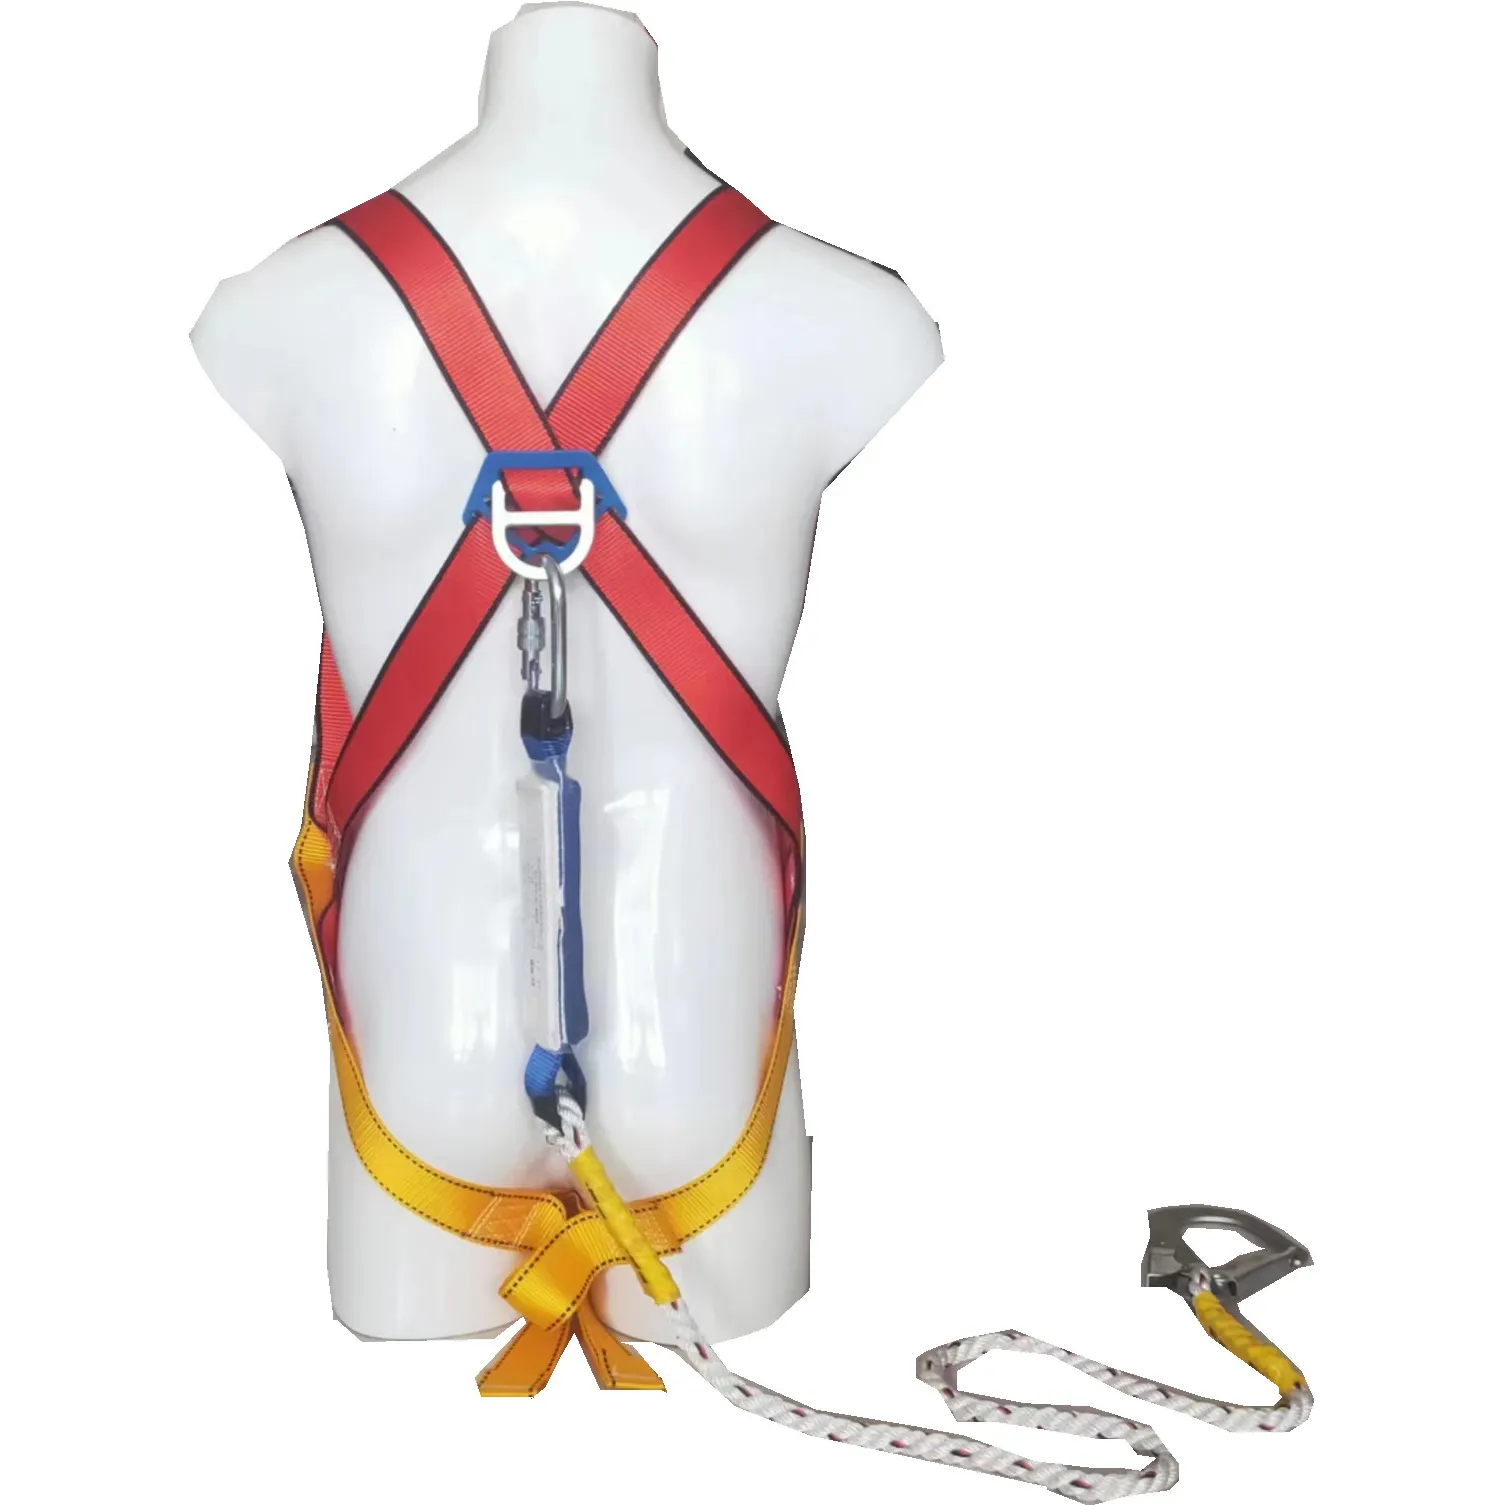 حزام لسلامة كامل الجسم مع خطاف مفرد يمكن تعديله عند التسلق من ثلاث نقاط لمنع السقوط